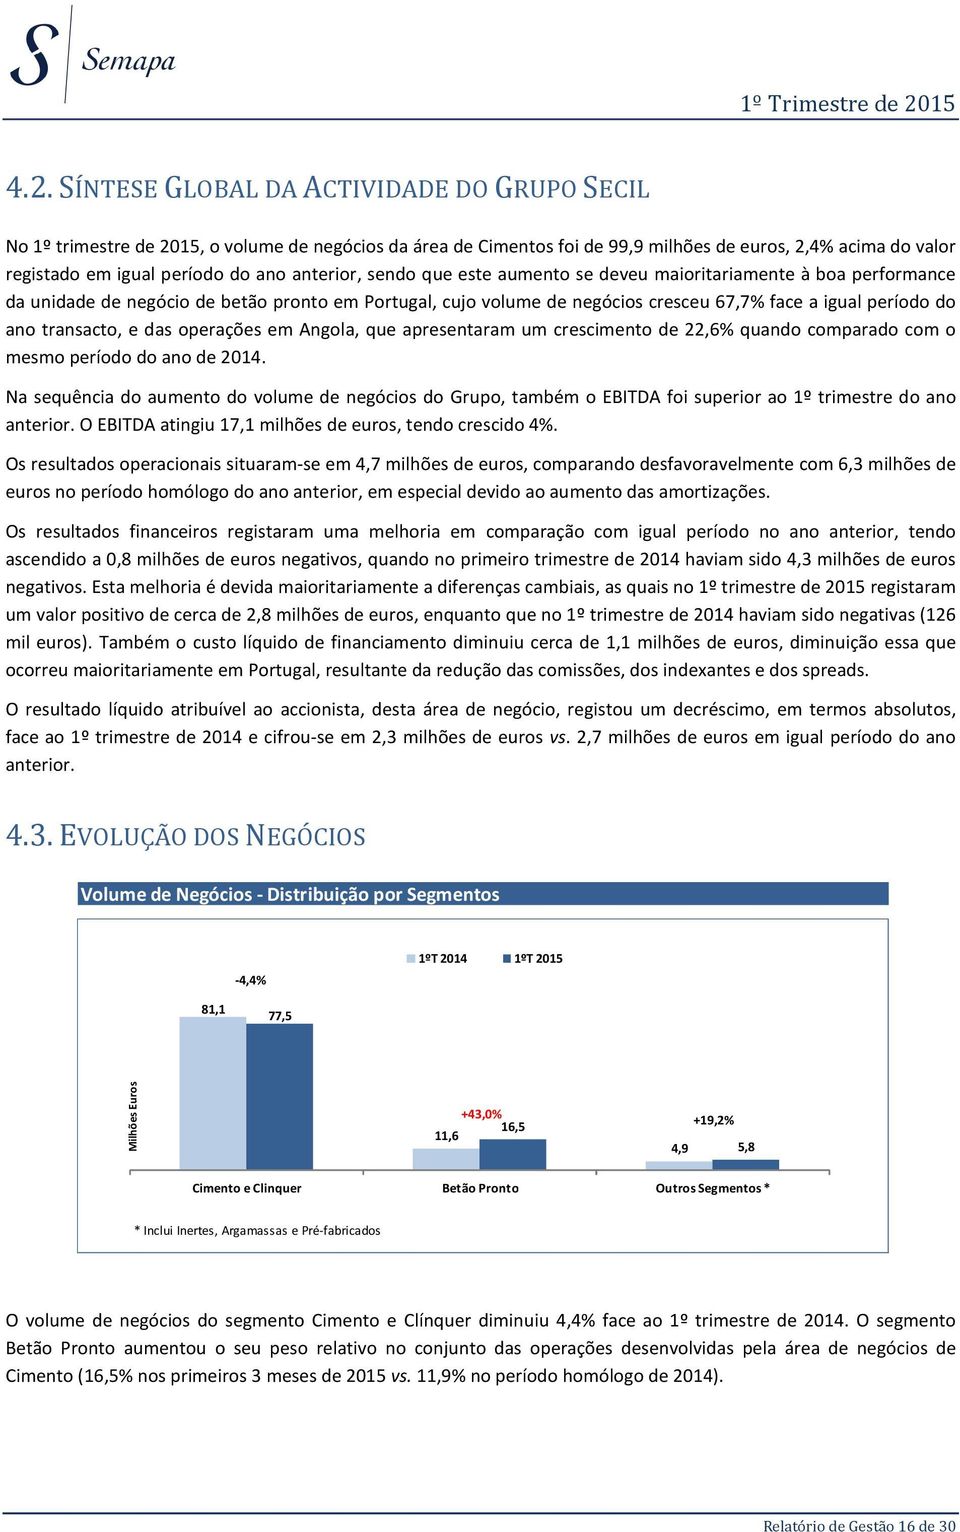 transacto, e das operações em Angola, que apresentaram um crescimento de 22,6% quando comparado com o mesmo período do ano de 2014.